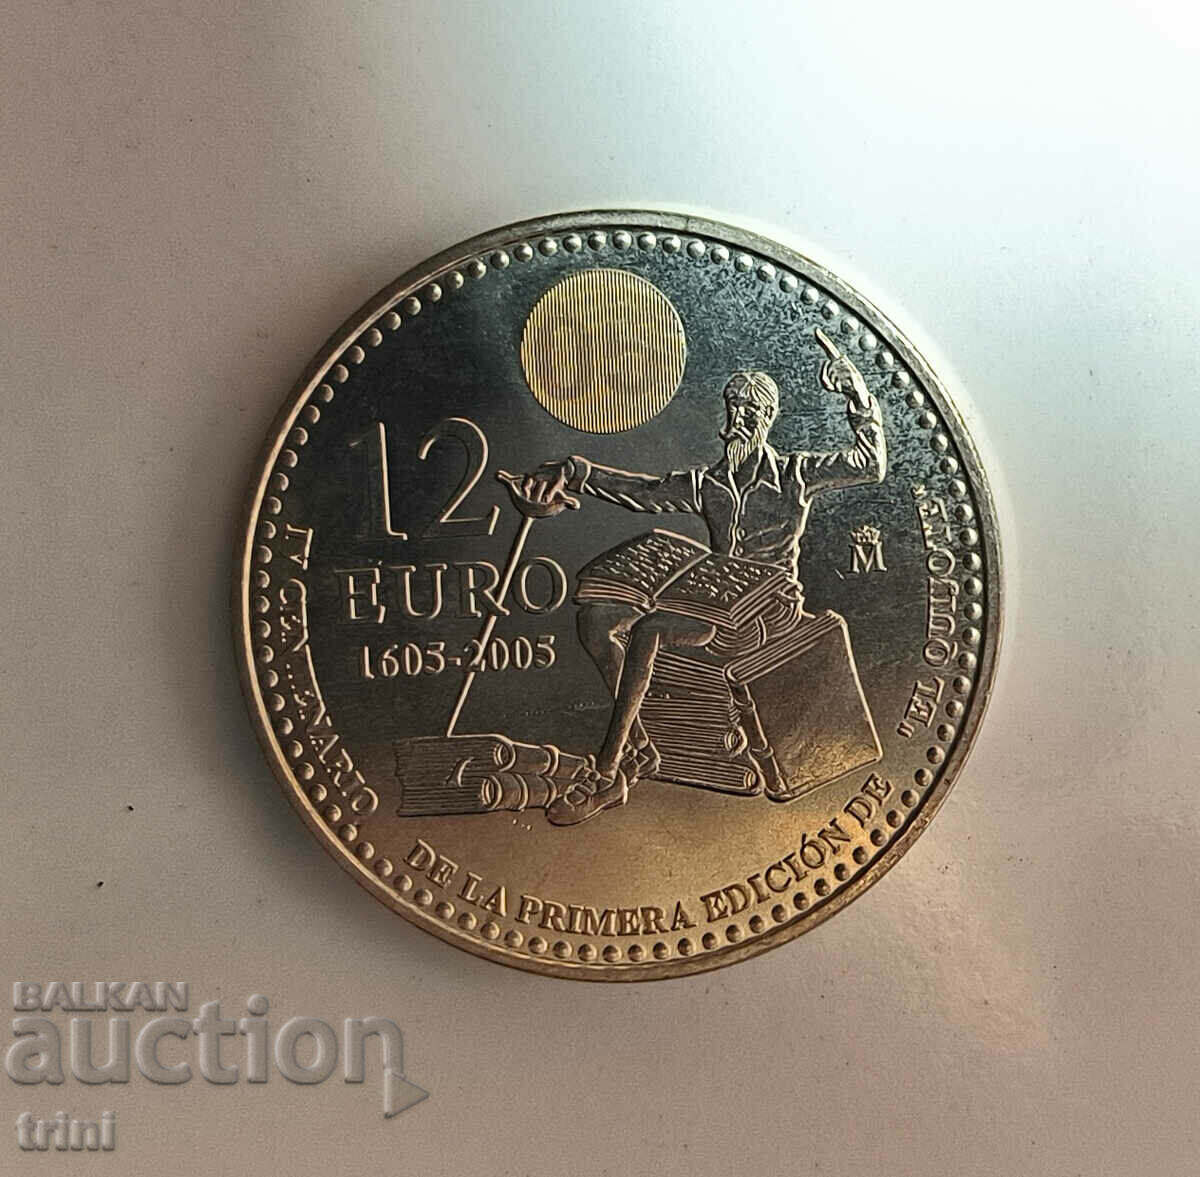 Spania 12 euro 2005 400 ani Don Quijote d133